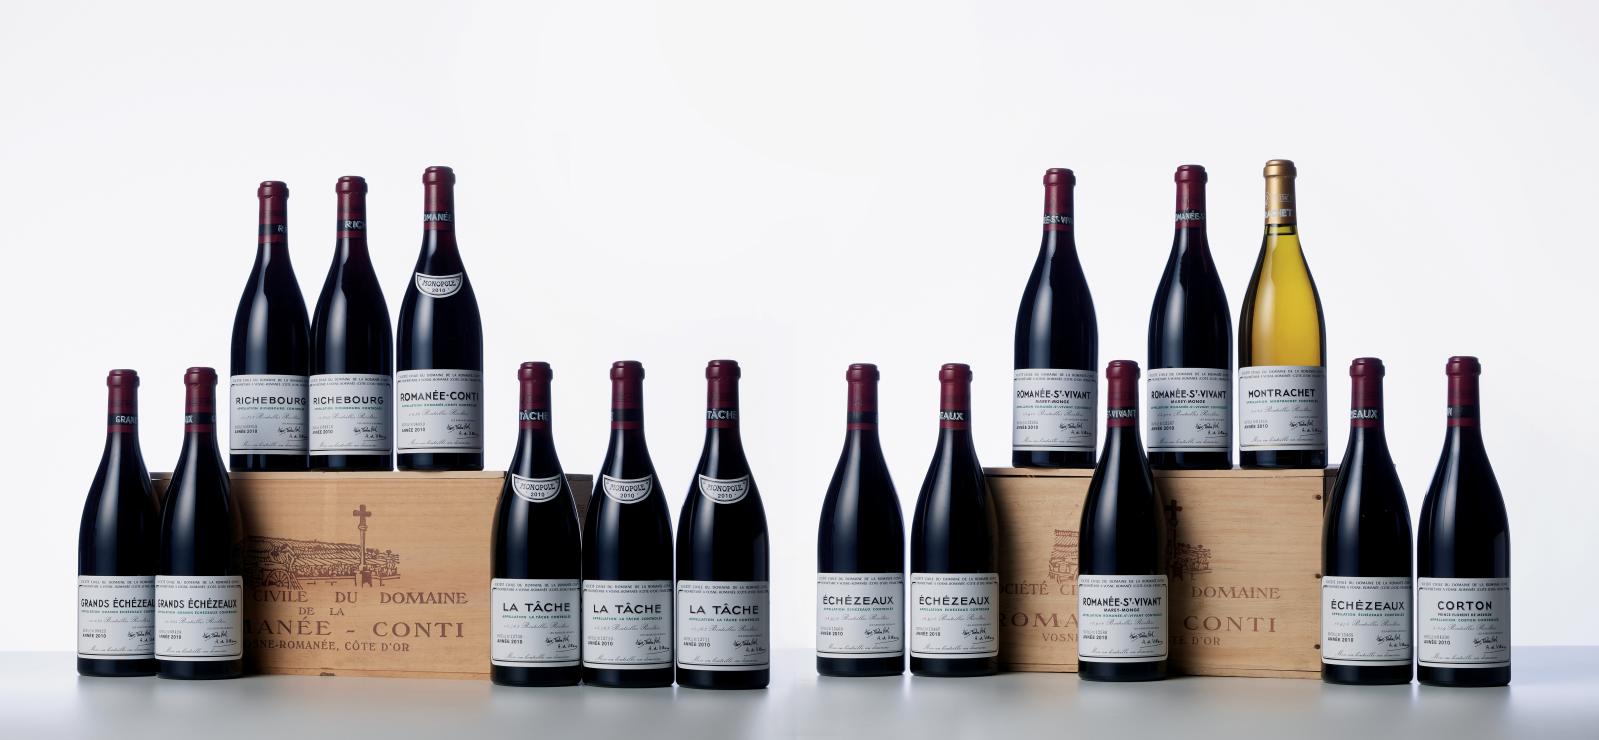 Trois jours de ventes ont été nécessaires pour disperser les grands vins provenant de belles caves françaises, pour un résultat avoisinant